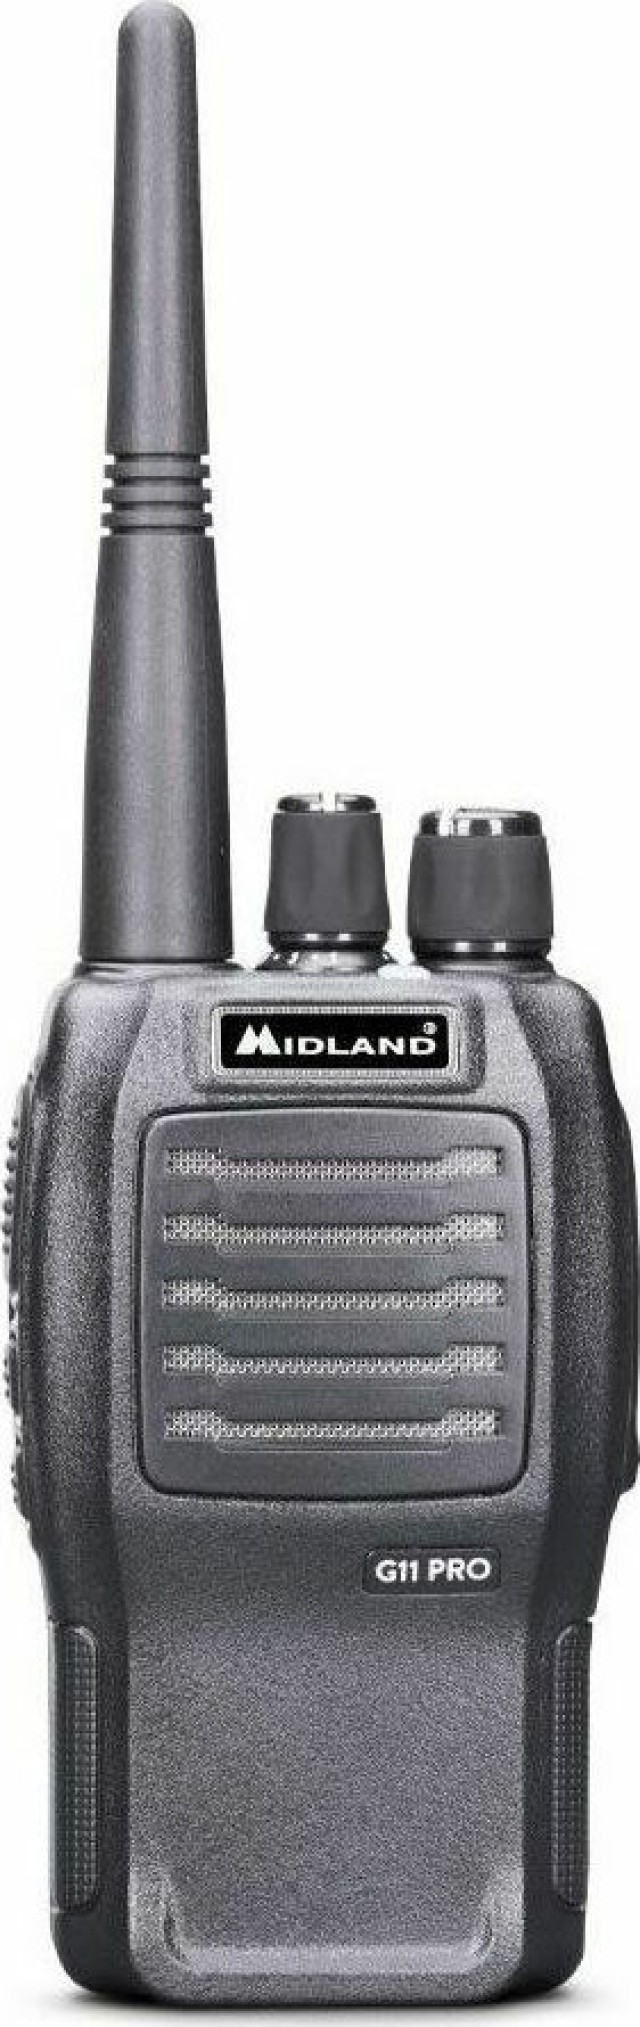 Midland G11 PRO Wireless PMR Transceiver